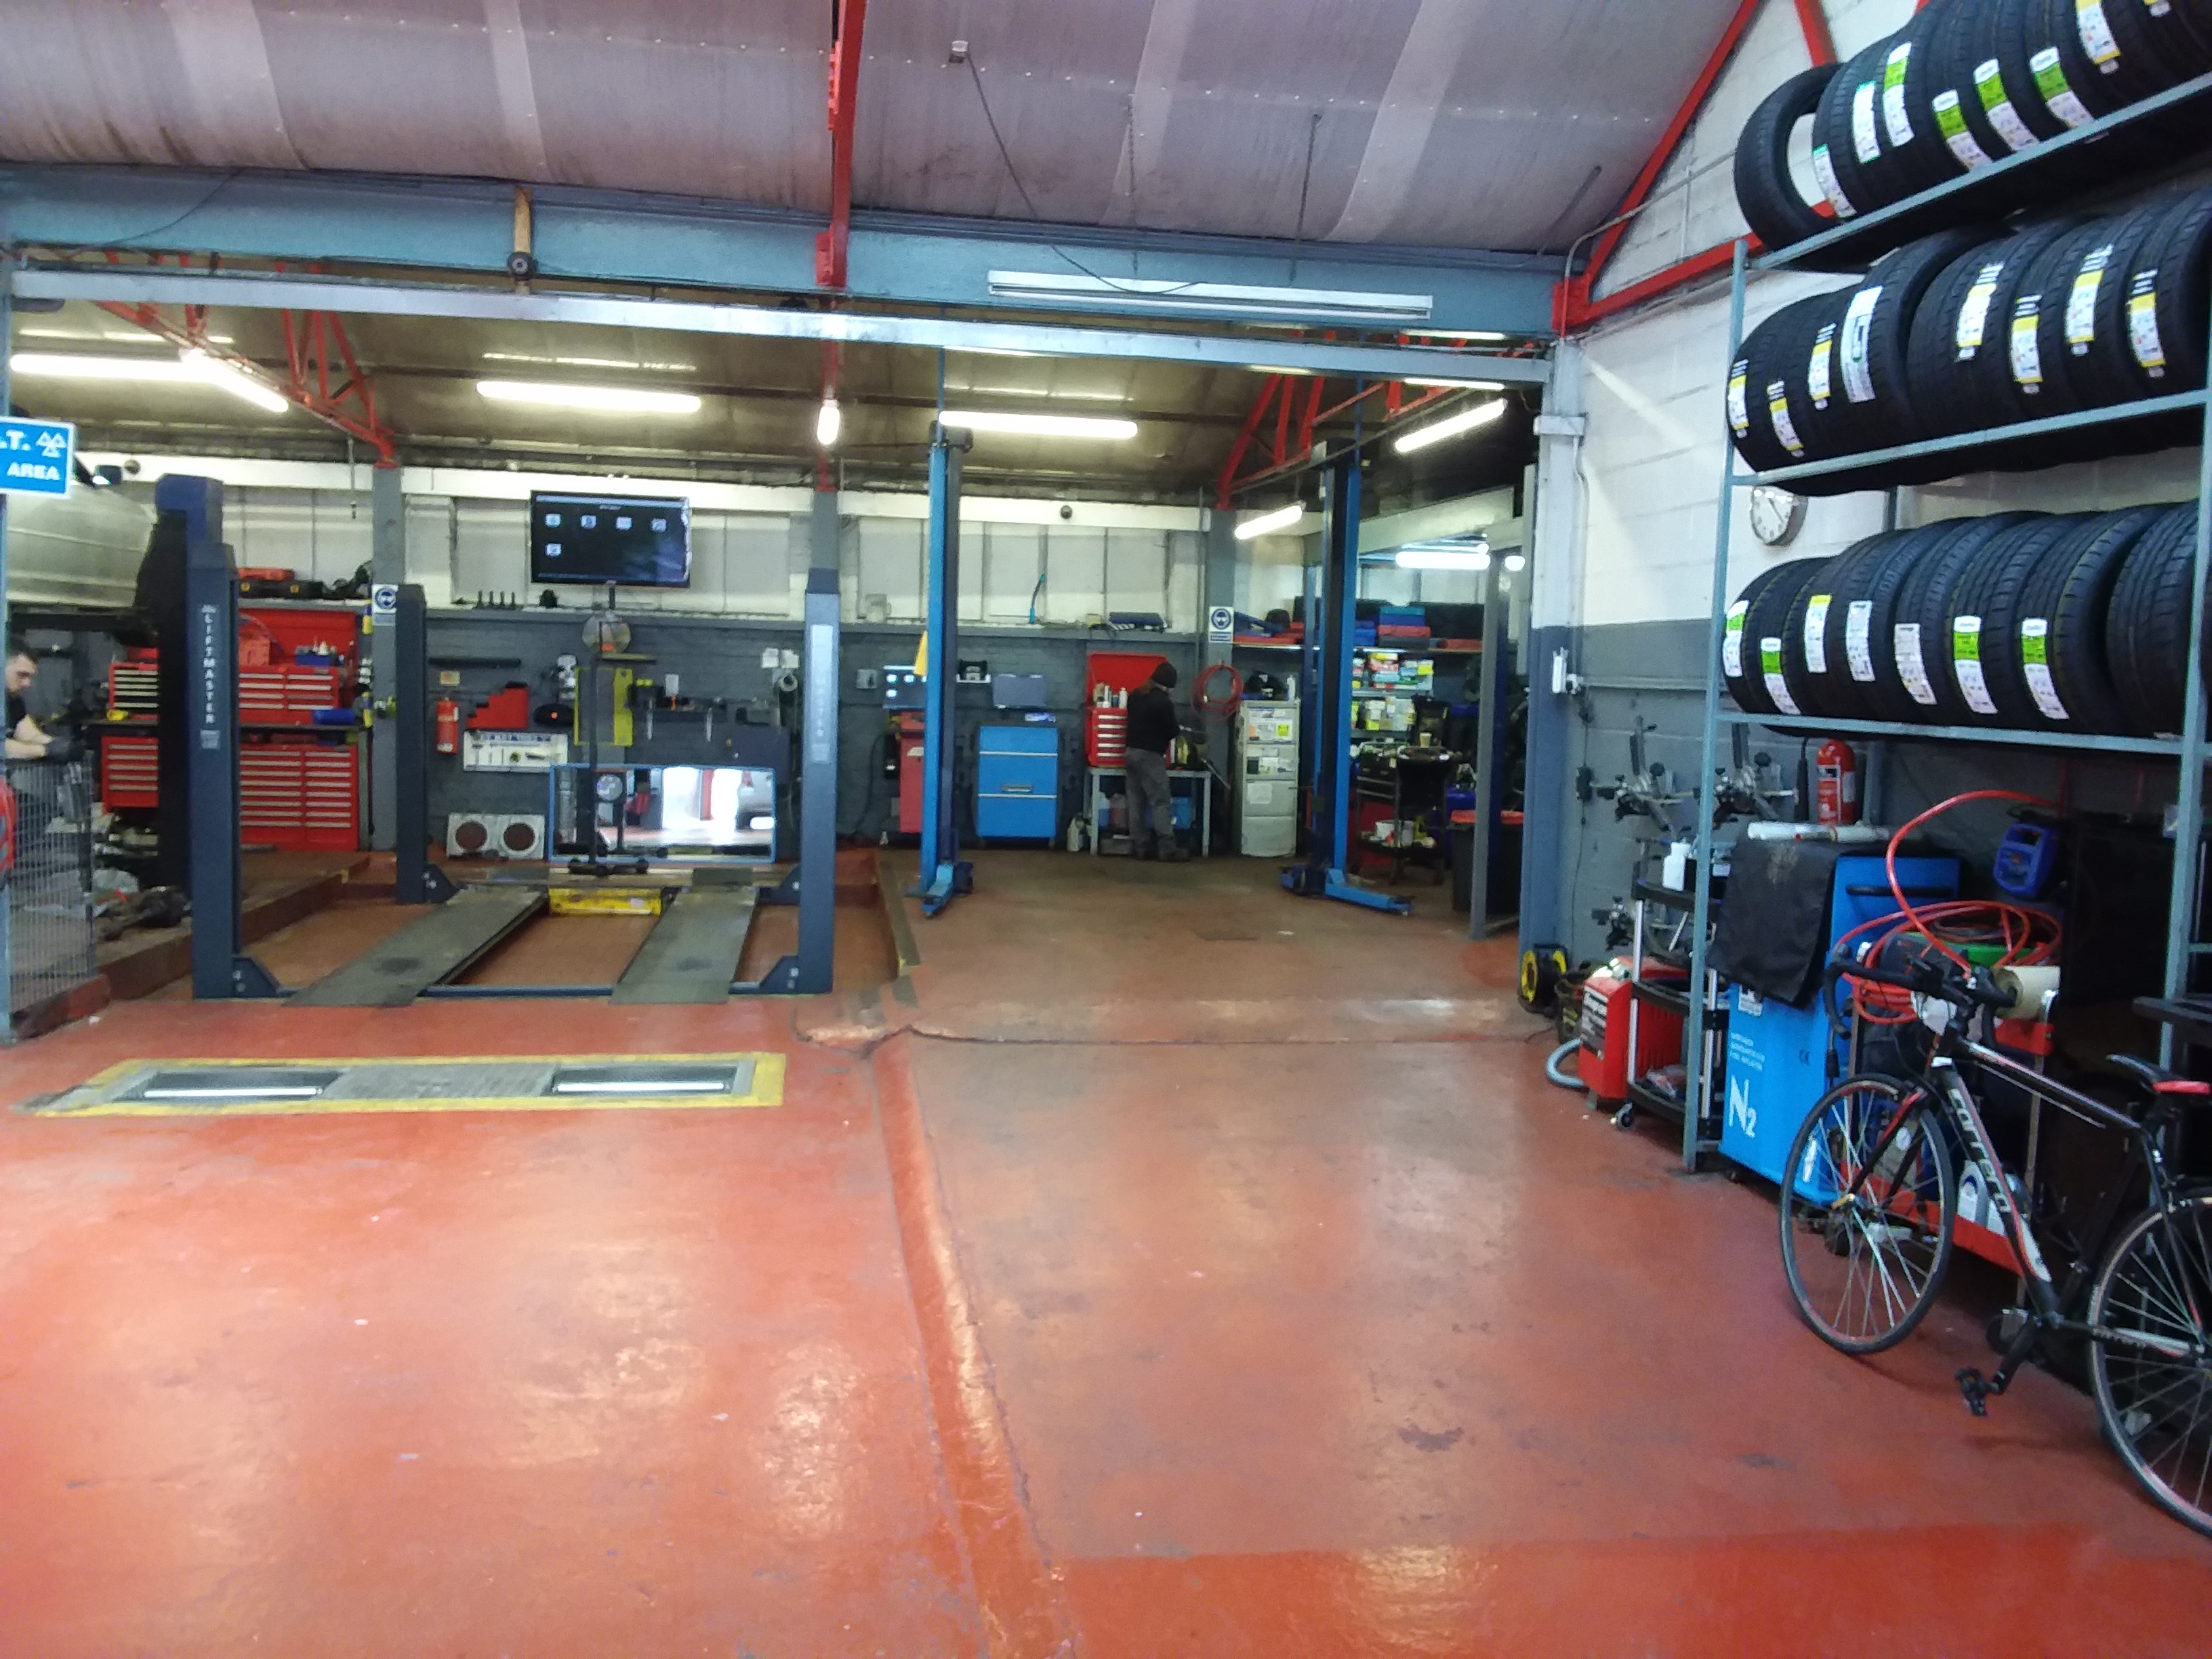 Image 5 of Dalston Auto Centre Ltd